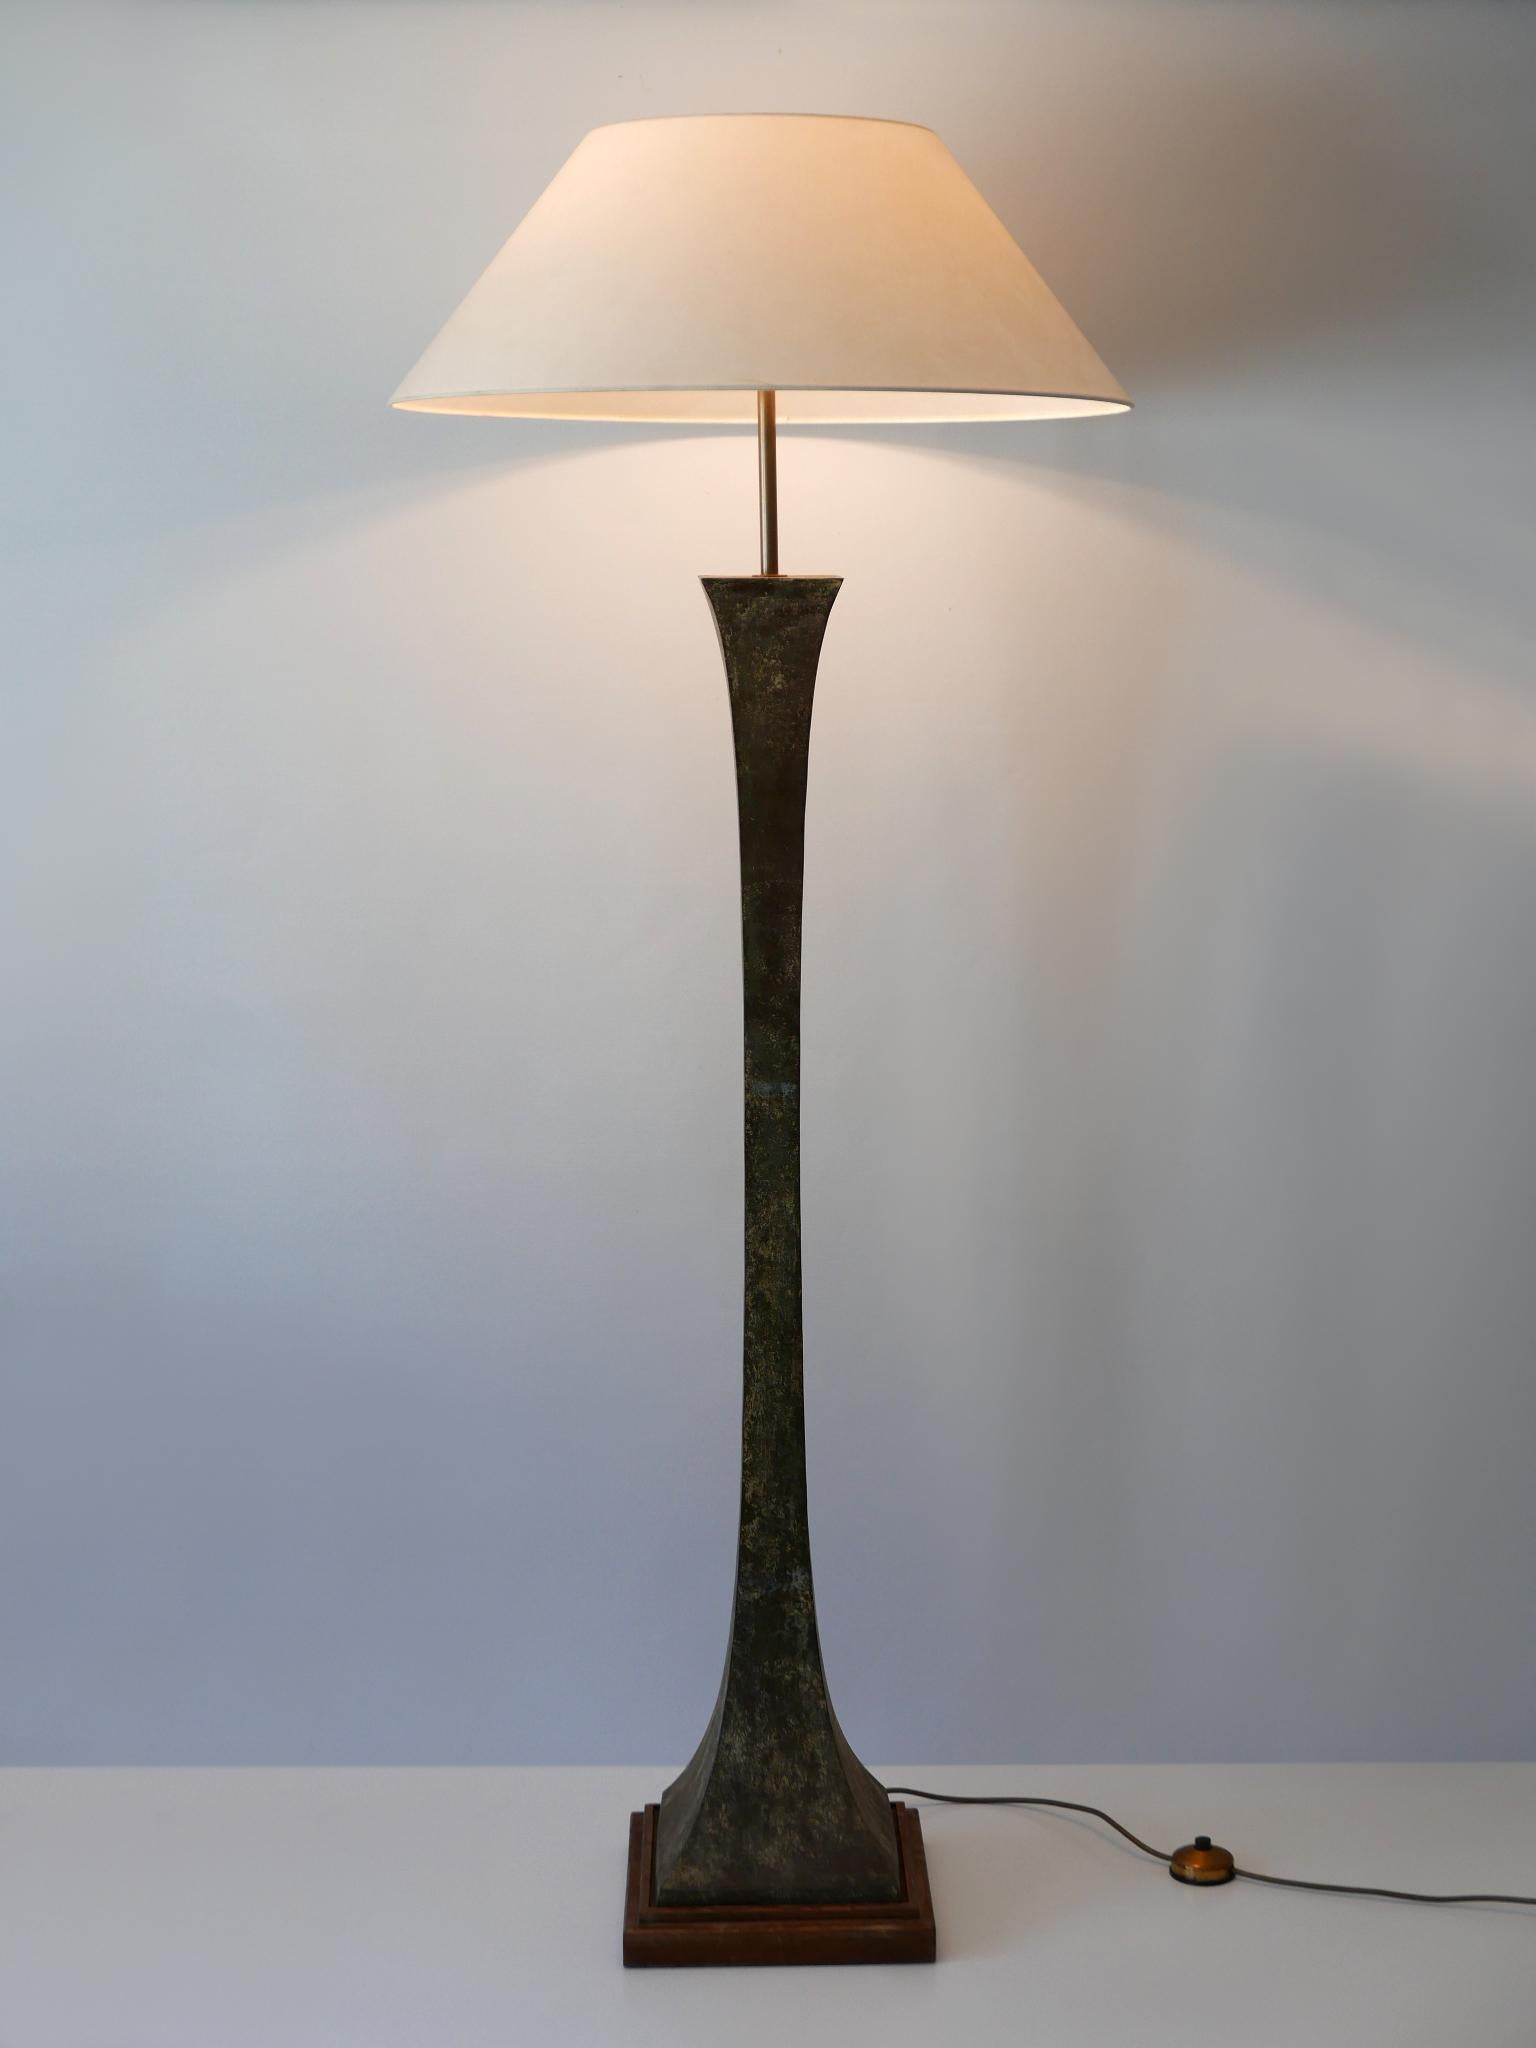 Monumental et élégant lampadaire Mid-Century Modern en bronze vert-de-gris. Conçu par Stewart Ross James et fabriqué par Hansen Lighting, New York, États-Unis, années 1960.

Réalisé en bronze vert-de-gris, en laiton et en bois, le lampadaire est